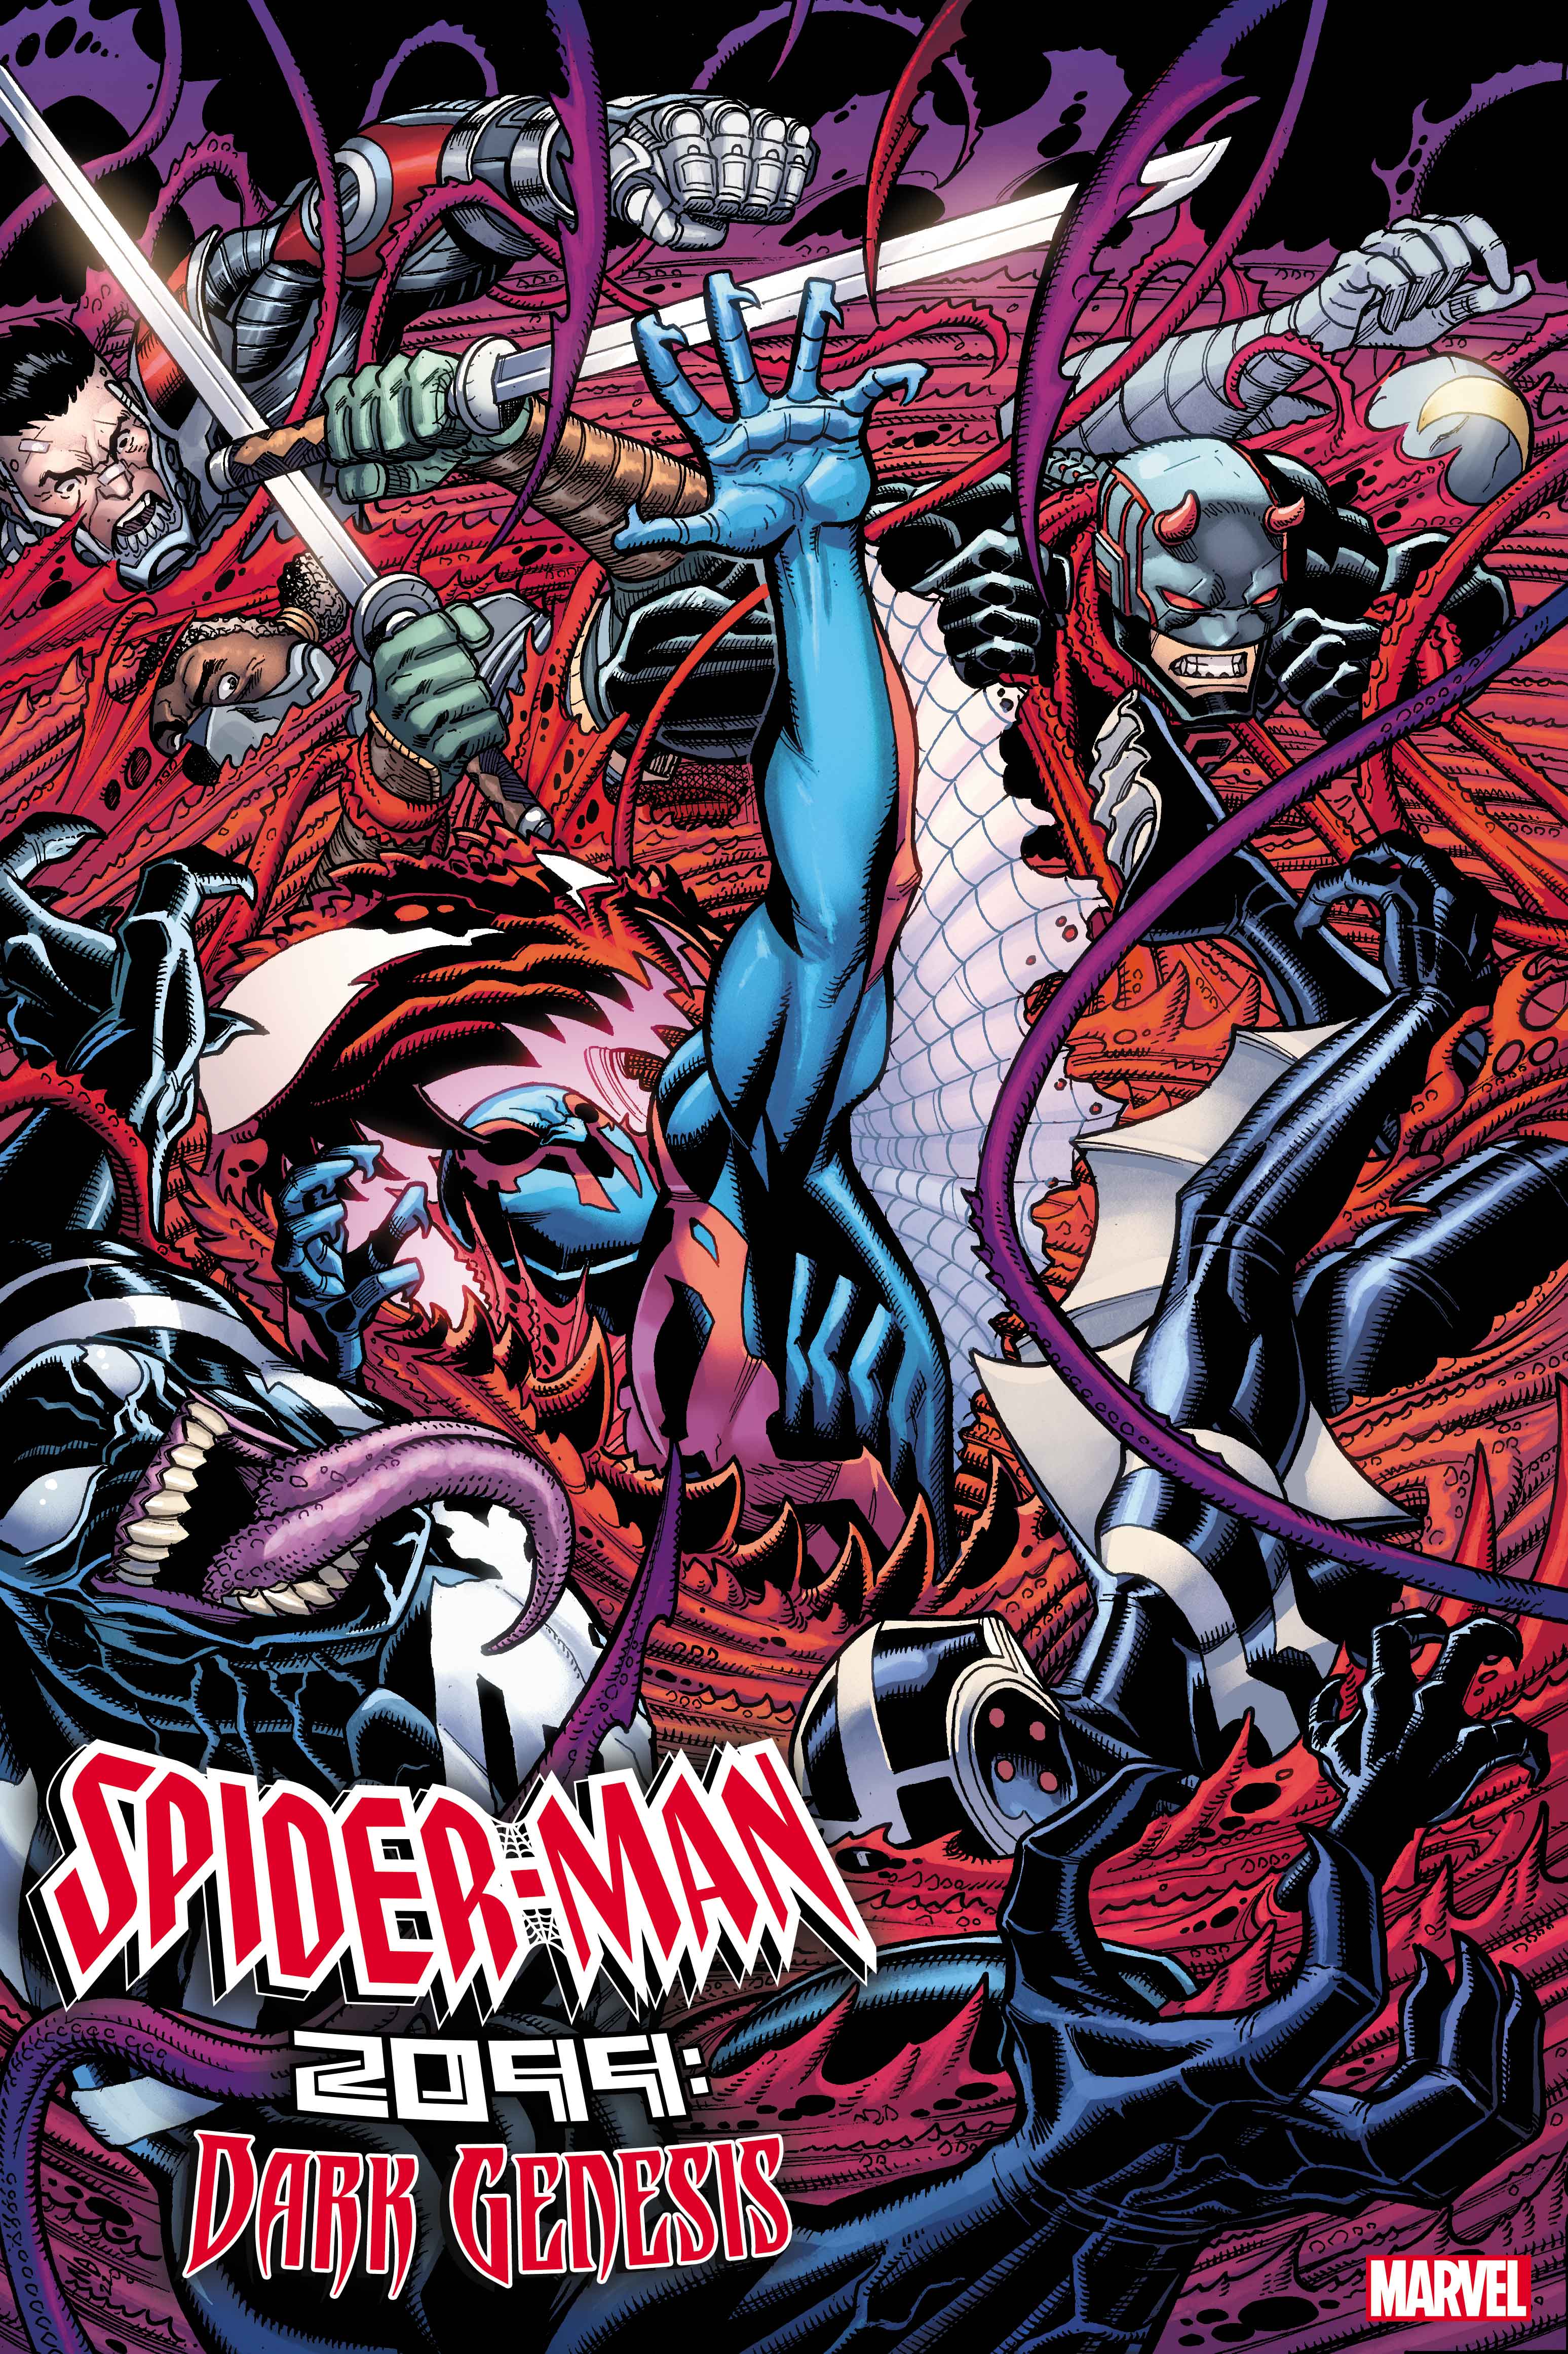 SPIDER-MAN 2099: DARK GENESIS #5 cover